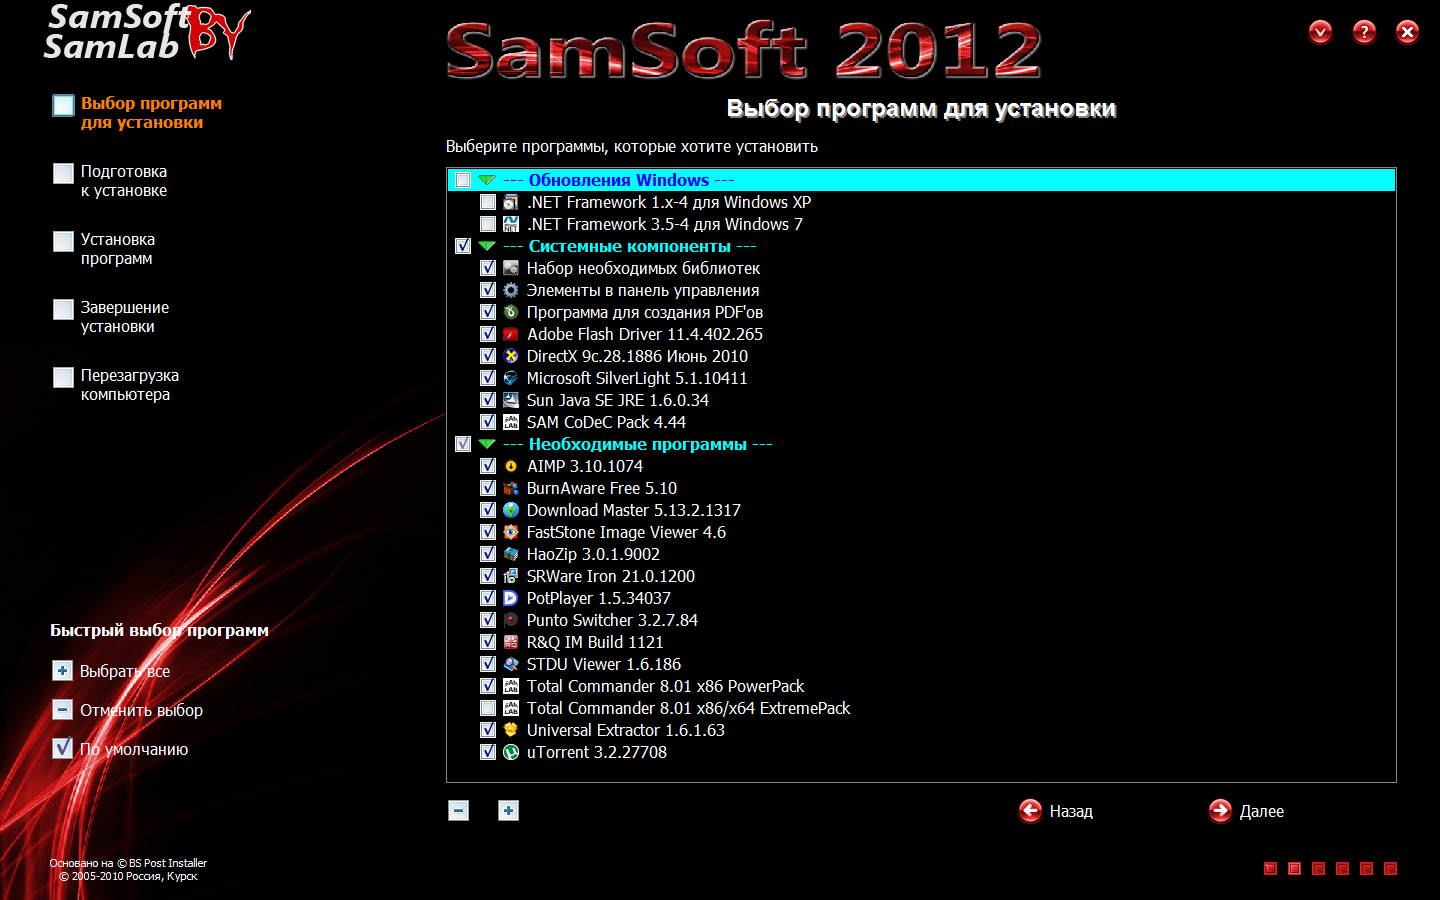 SamSoft 2012 CD-Lite